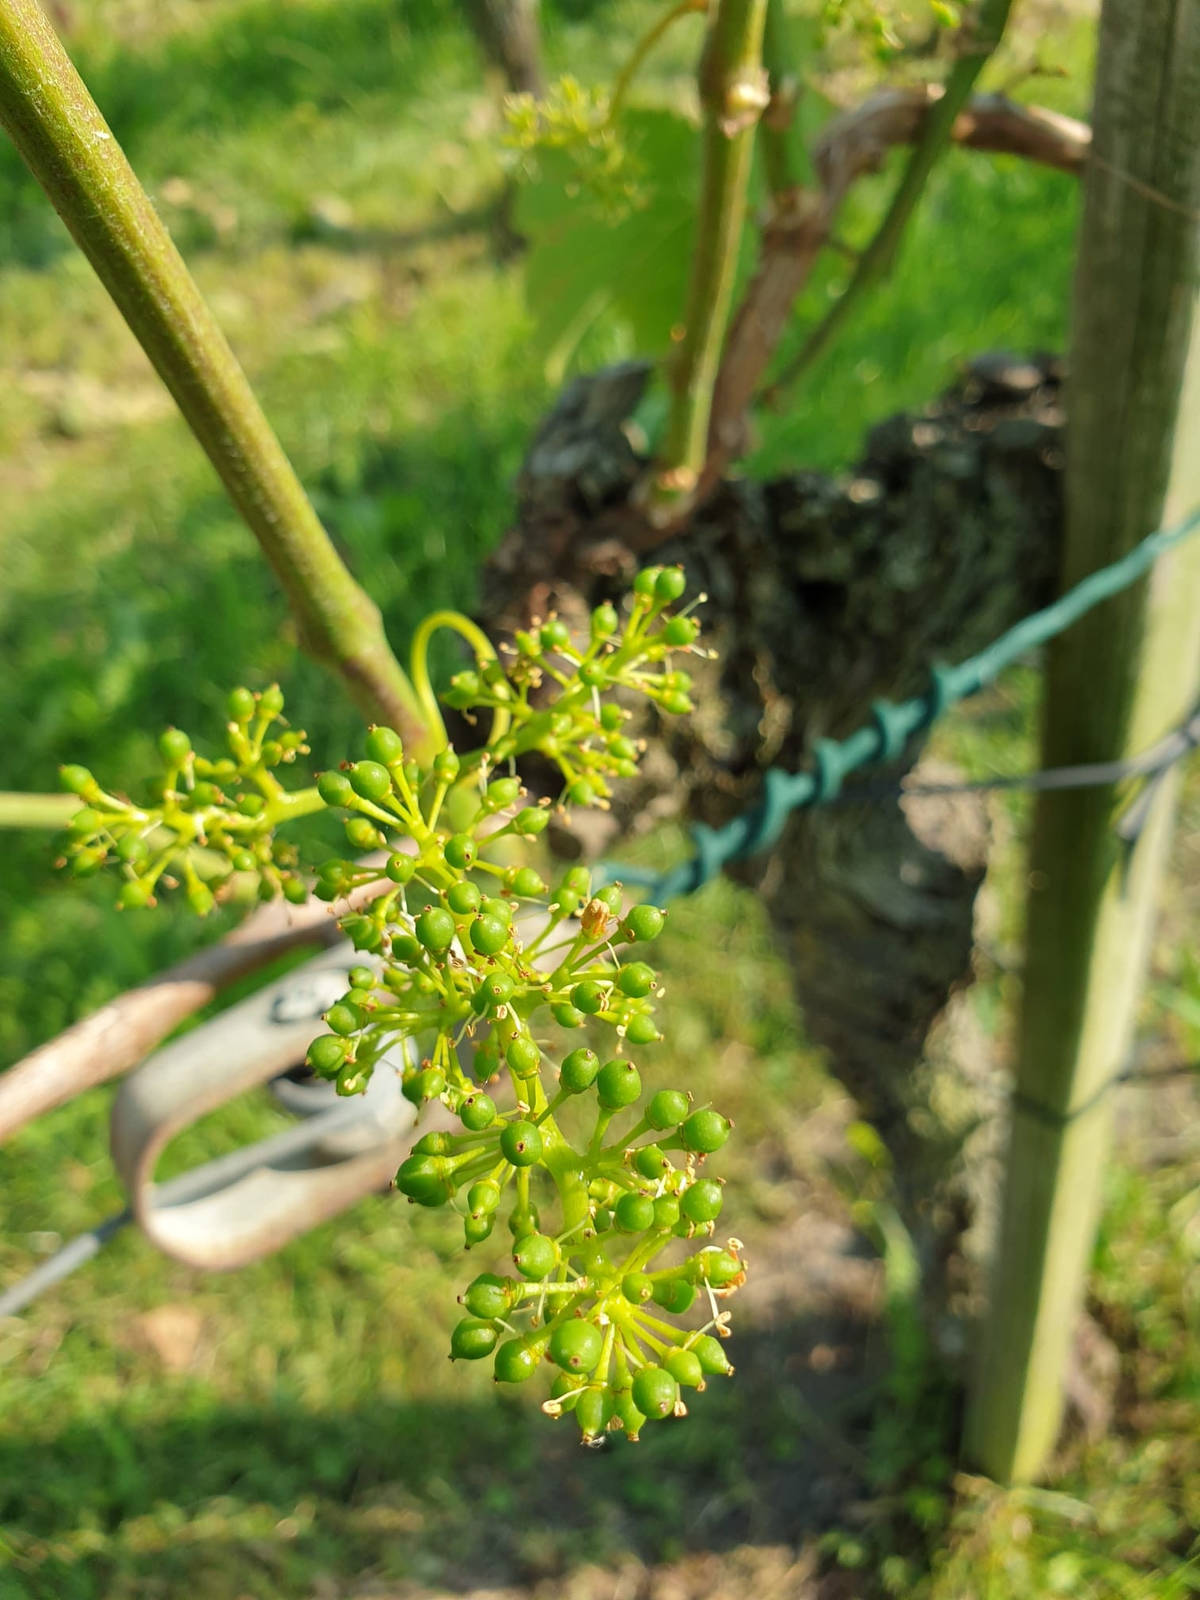 Gute Ausgangslage: Der warme Frühling hat dazu geführt, dass die Trauben bereits fortgeschritten sind. Aus diesem Grund könnte die diesjährige Weinlese 10 bis 14 Tage früher als im Vorjahr stattfinden.